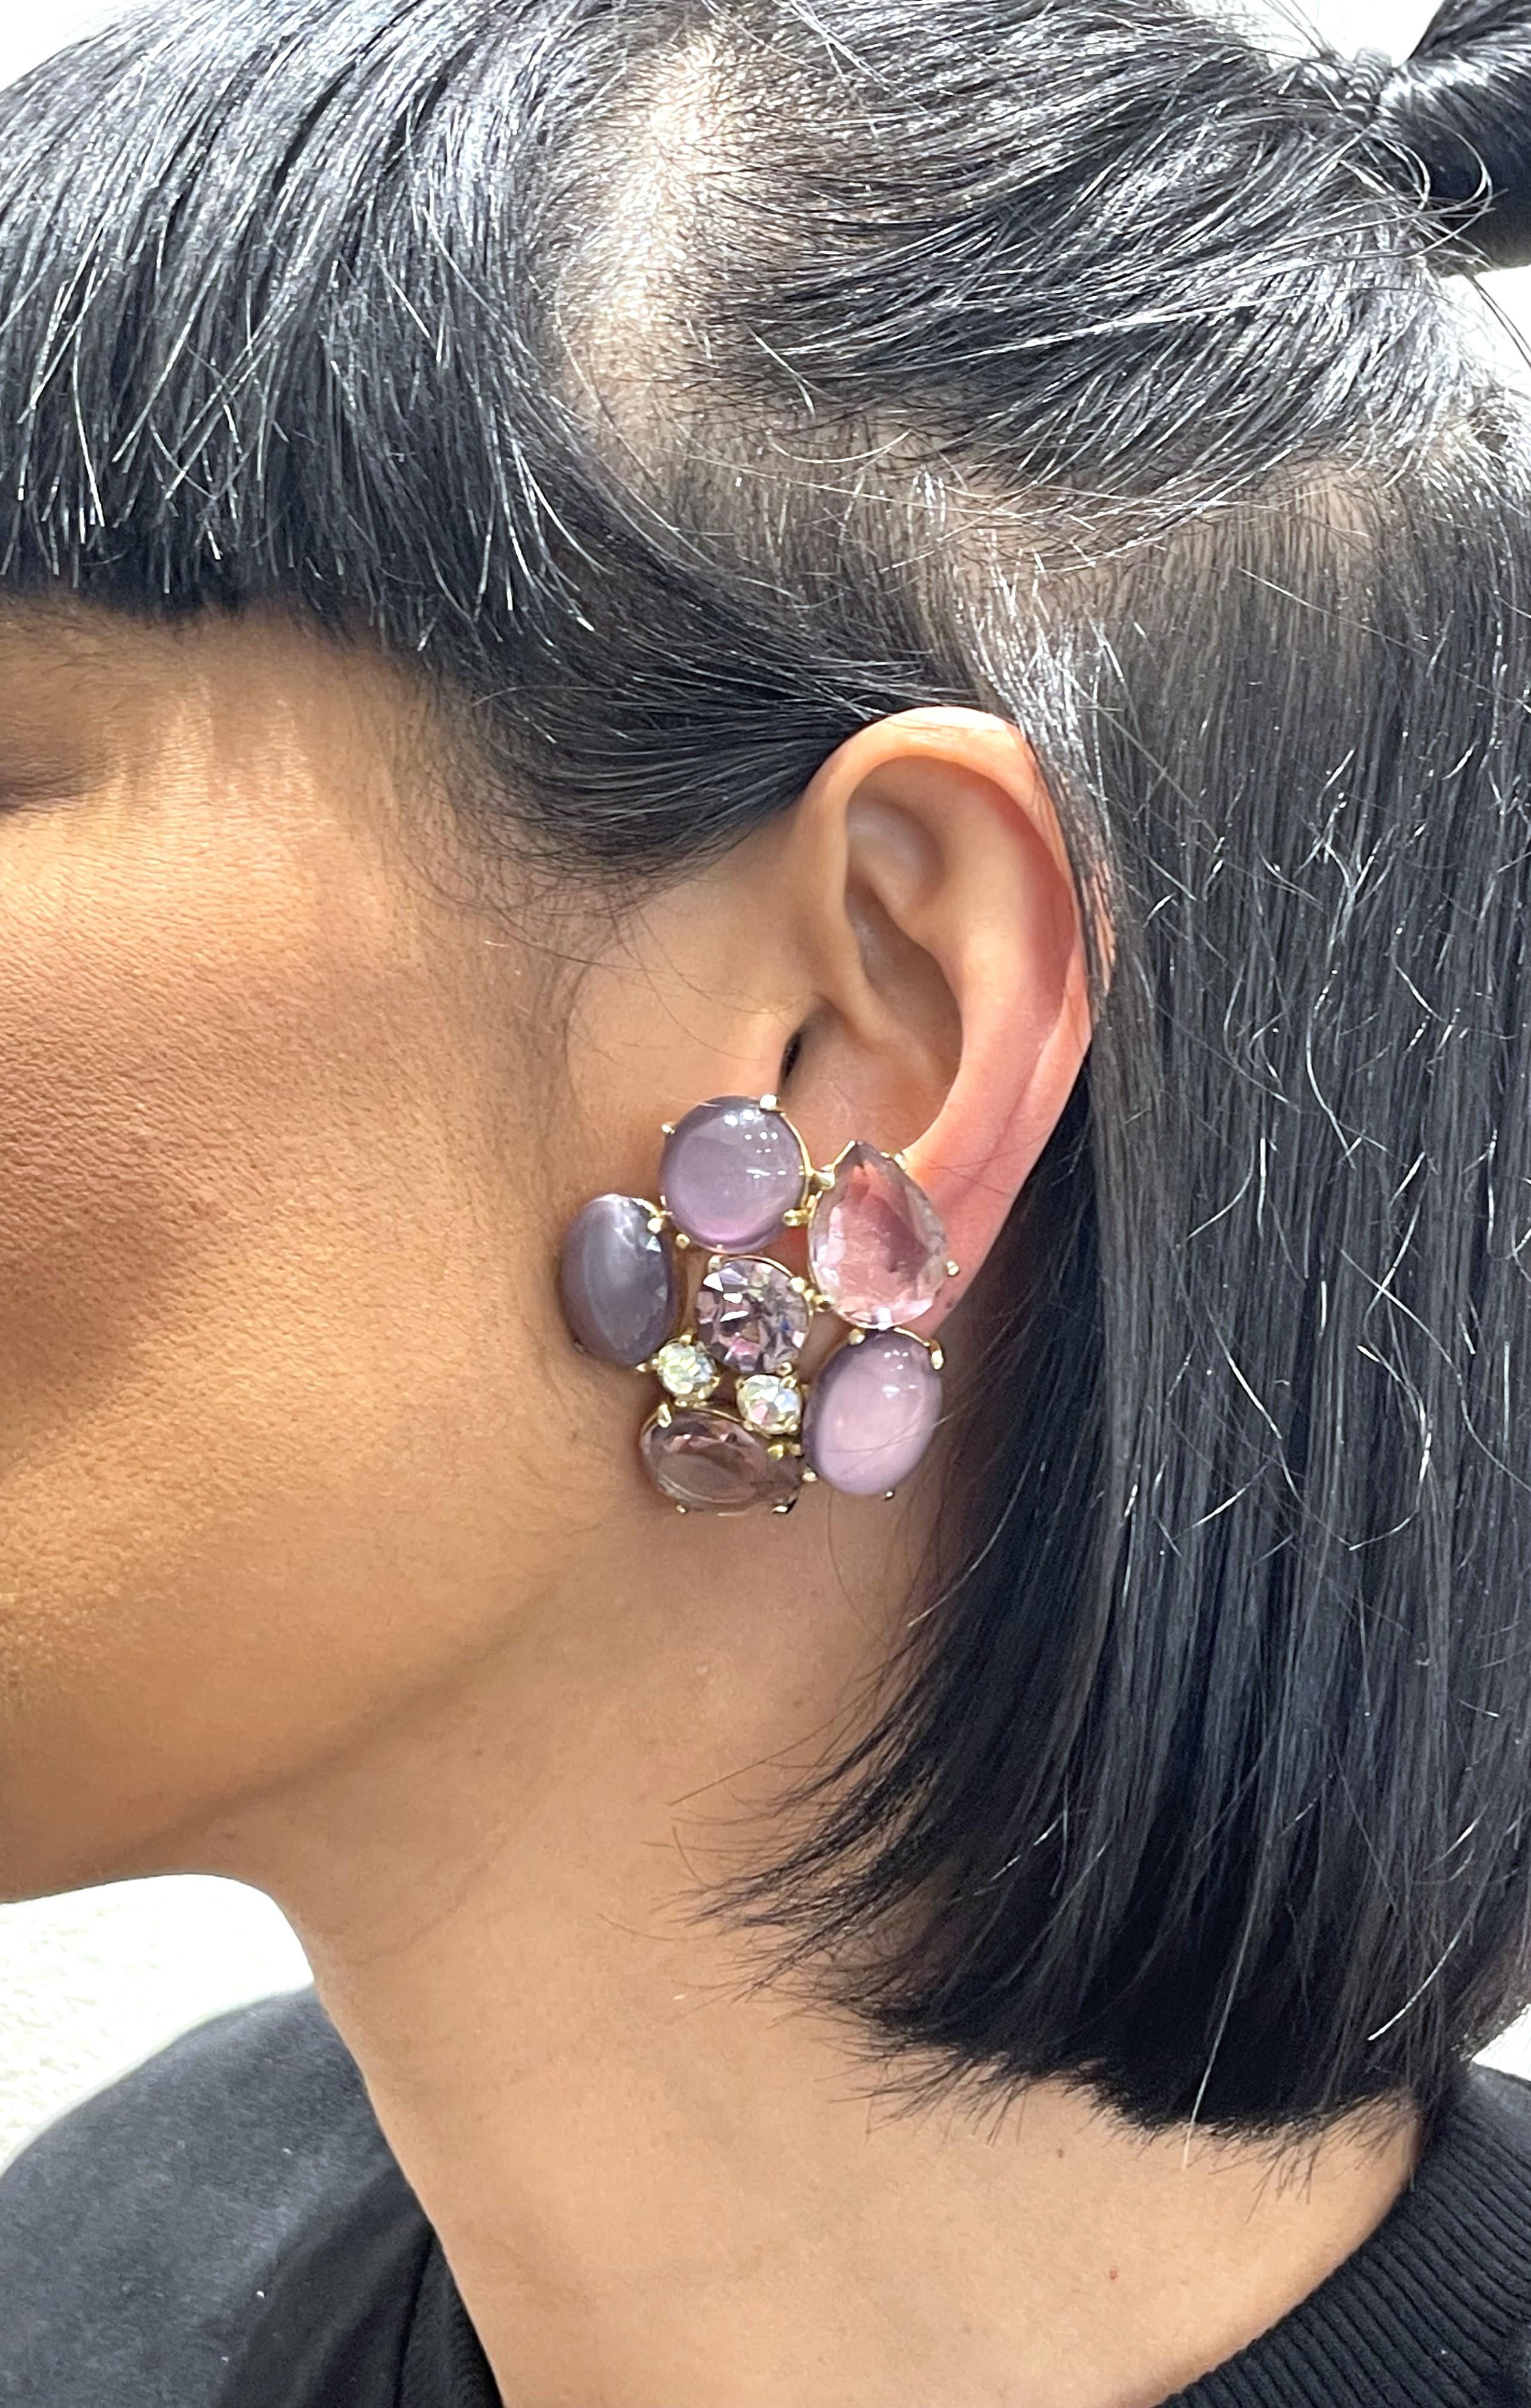 schiaparelli earrings